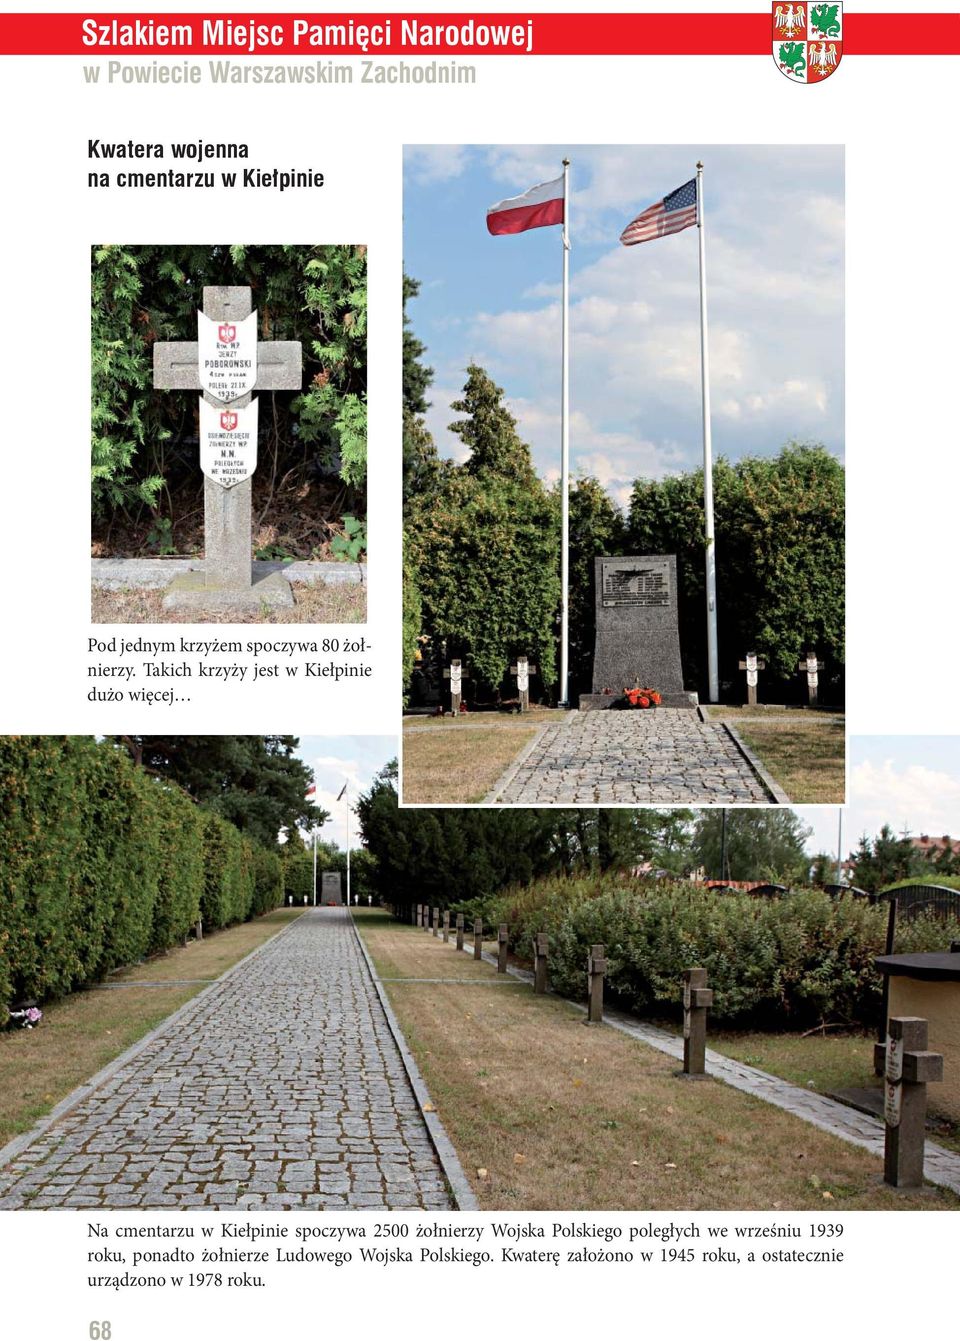 Takich krzyży jest w Kiełpinie dużo więcej Na cmentarzu w Kiełpinie spoczywa 2500 żołnierzy Wojska